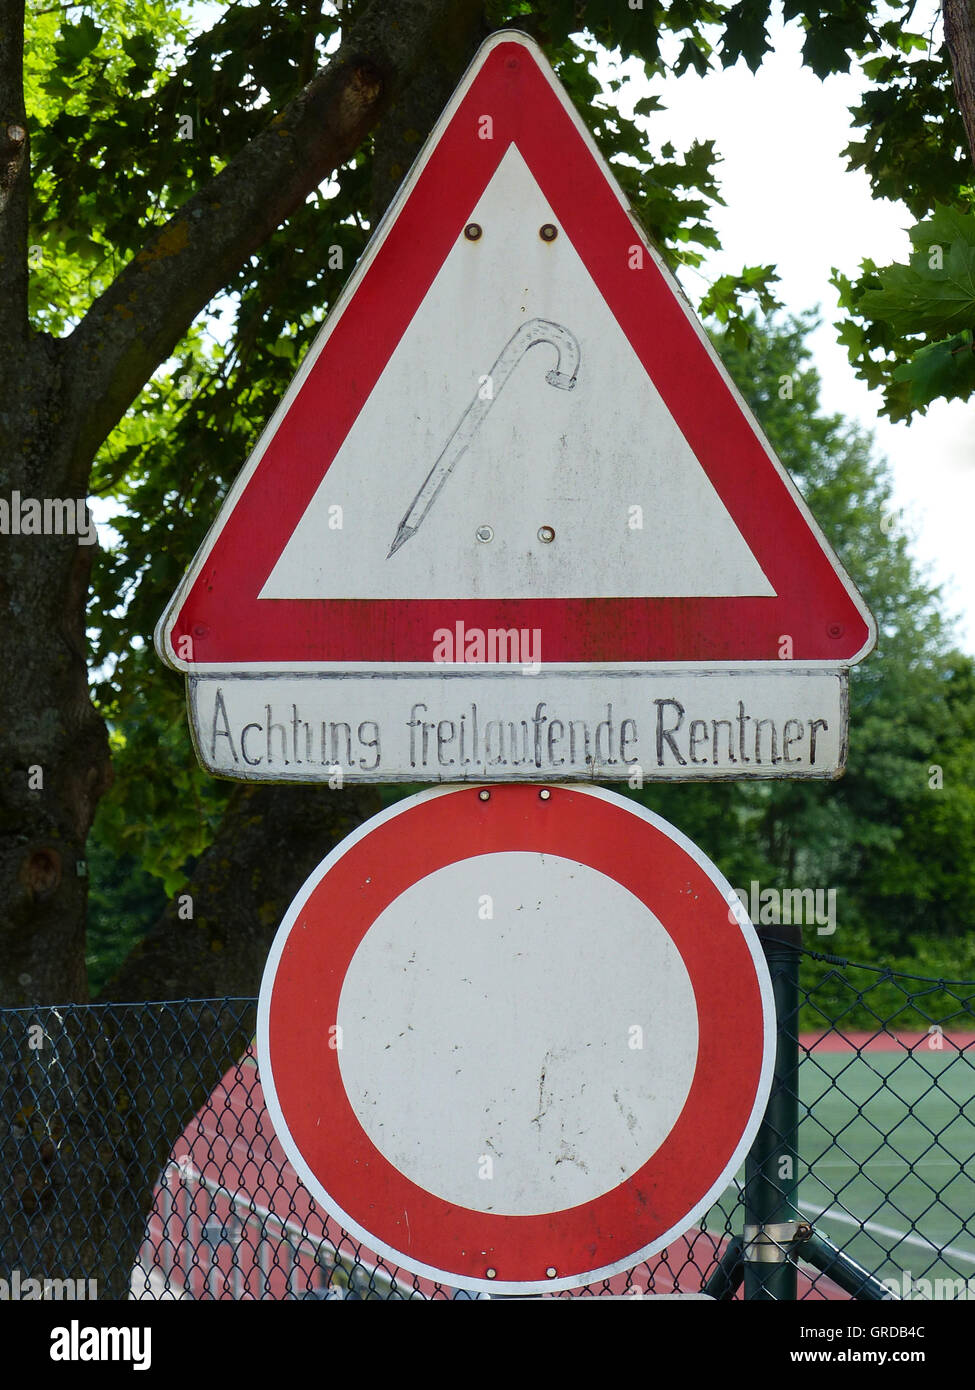 Verkehr-Zeichen-Einfahrt verboten und Achtung Vorfahrt mit zusätzlichen Zeichen Achtung Freerunning Rentner, gesehen In Spiesheim Stockfoto